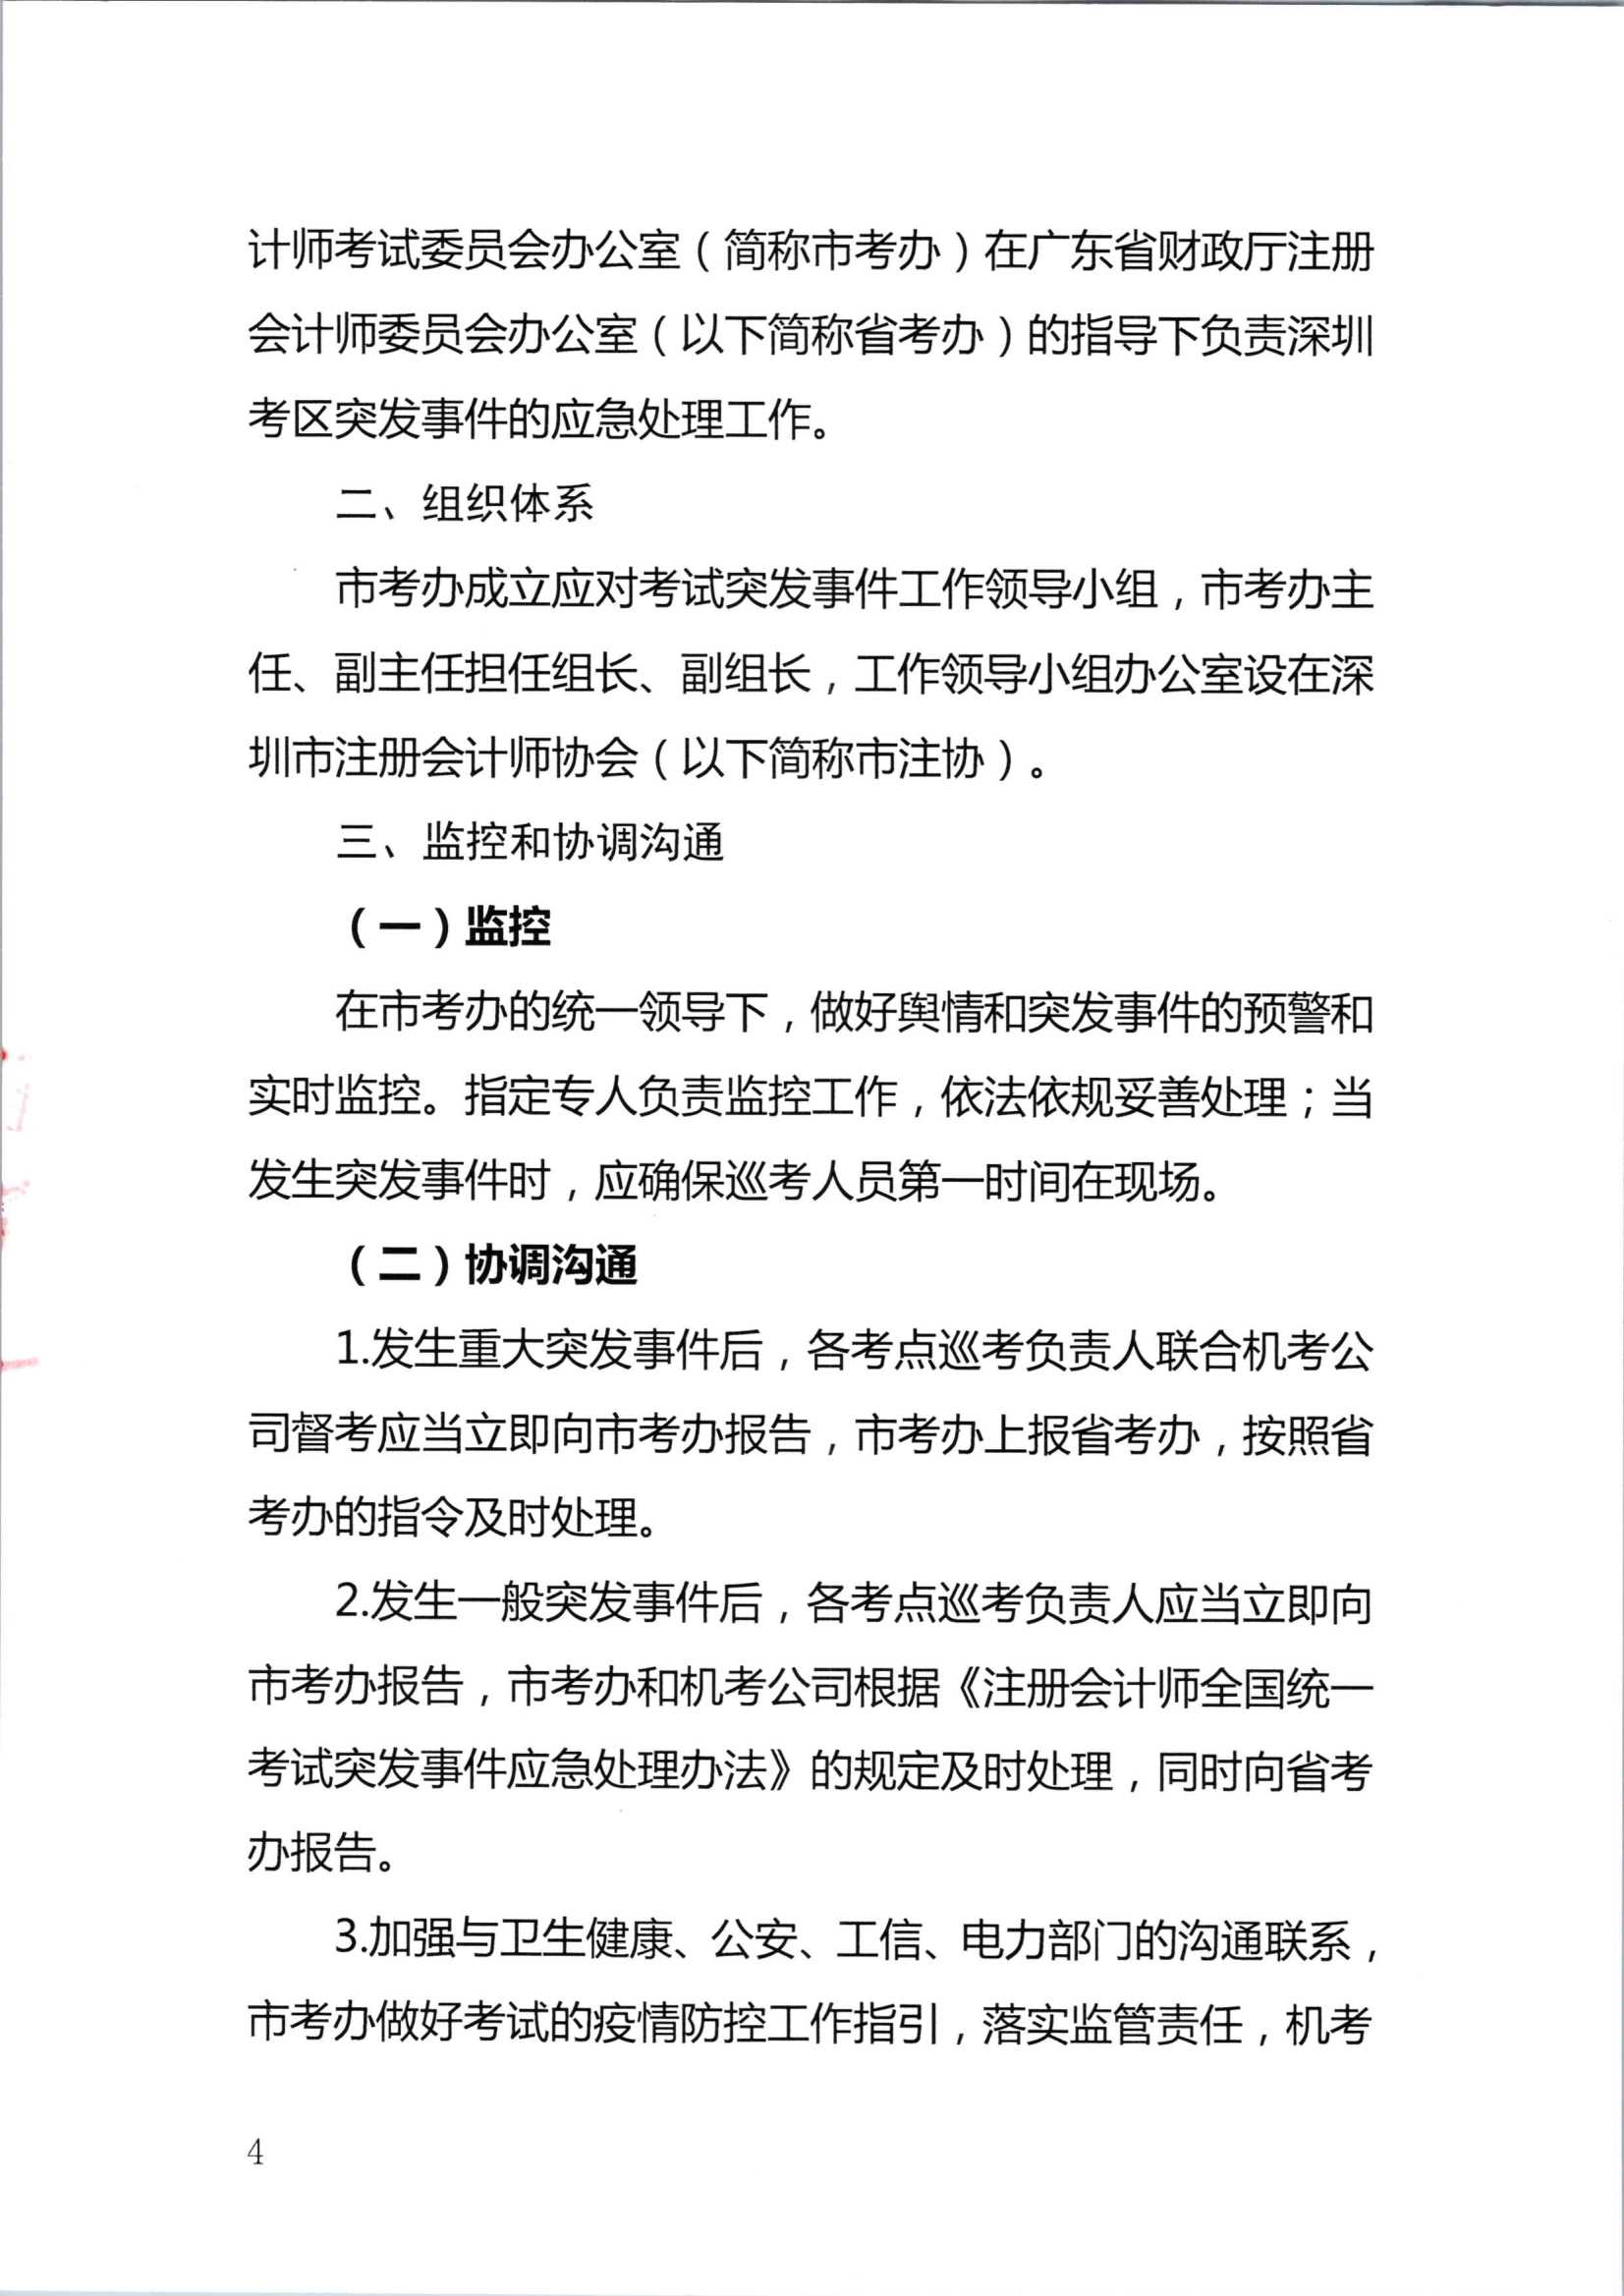 2020年注册会计师全国统一考试深圳考区突发事件应急预案_4.Png